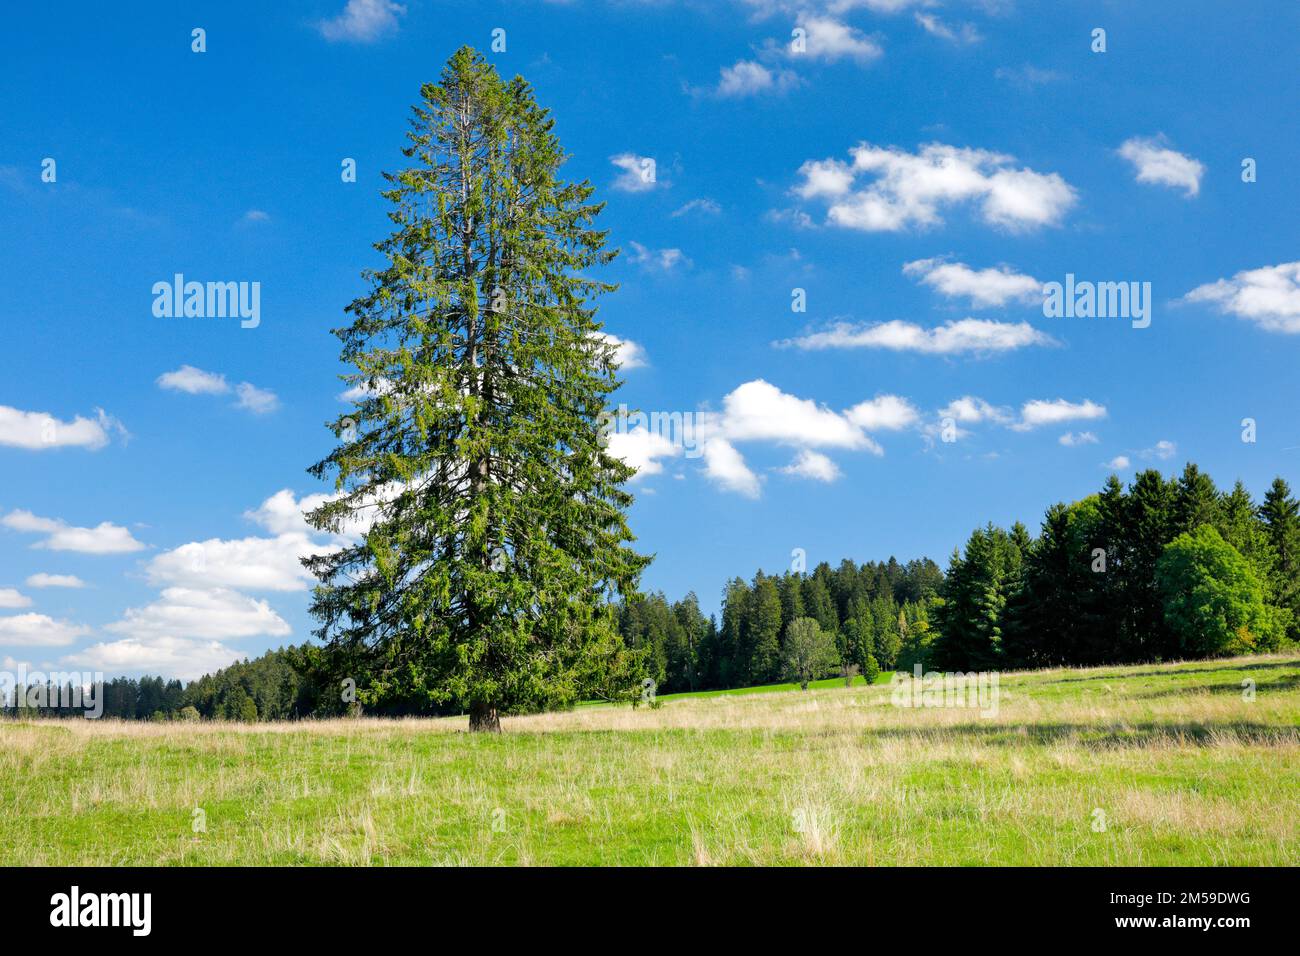 Grosse Fichte steht solitär in einer grünen Wiese unter blauem Himmel, bei Les Breuleux im Kanton Jura, Schweiz Stock Photo